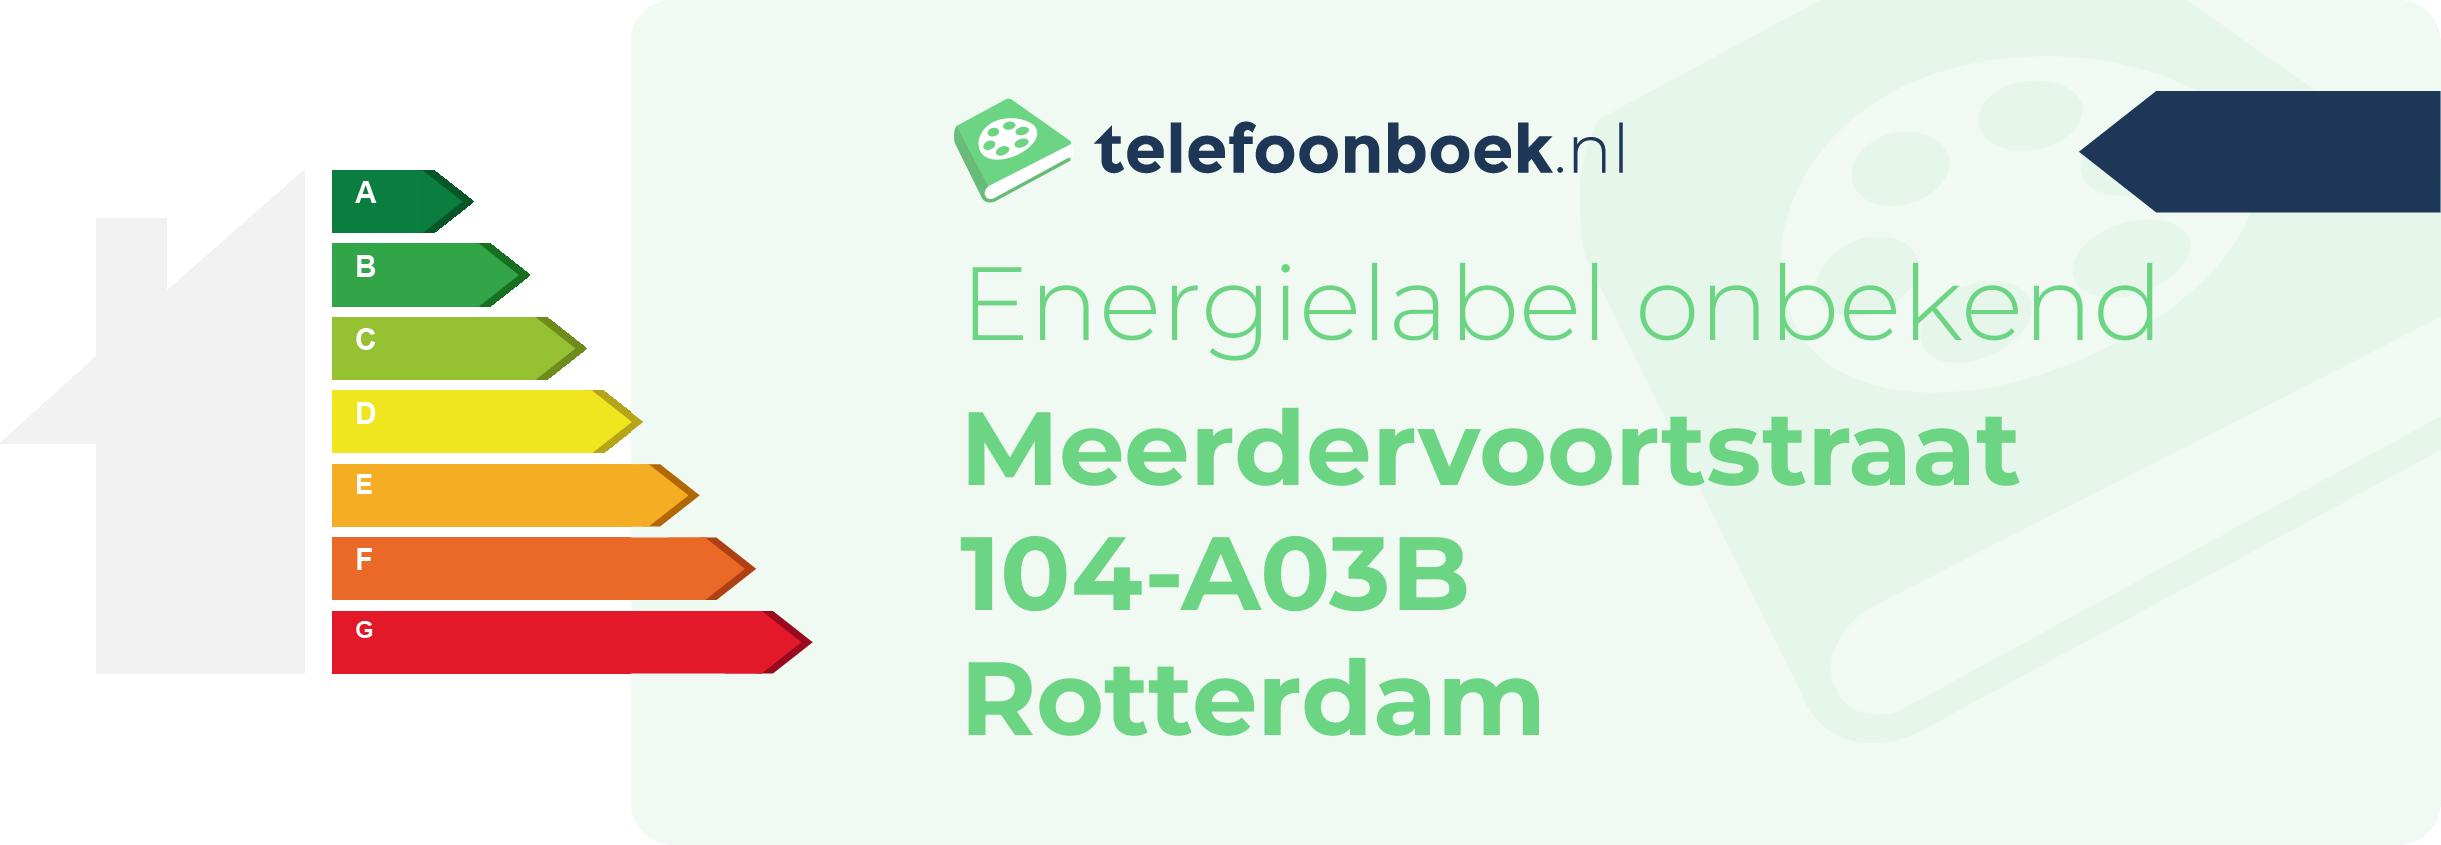 Energielabel Meerdervoortstraat 104-A03B Rotterdam